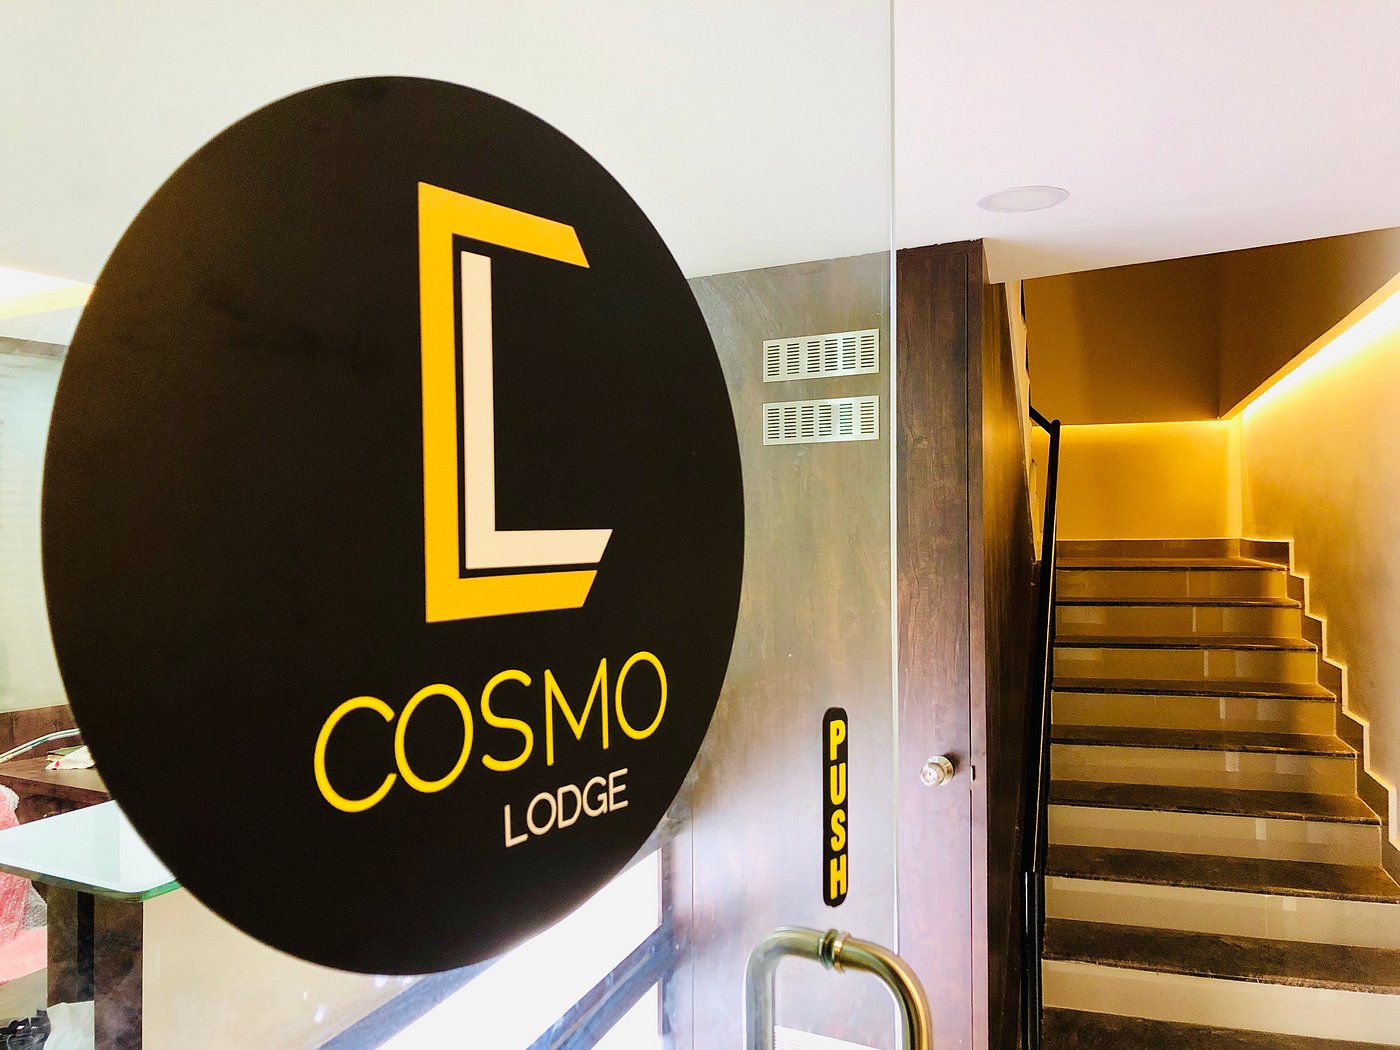 Cosmo Hotel ?w=1400&h= 1&s=1